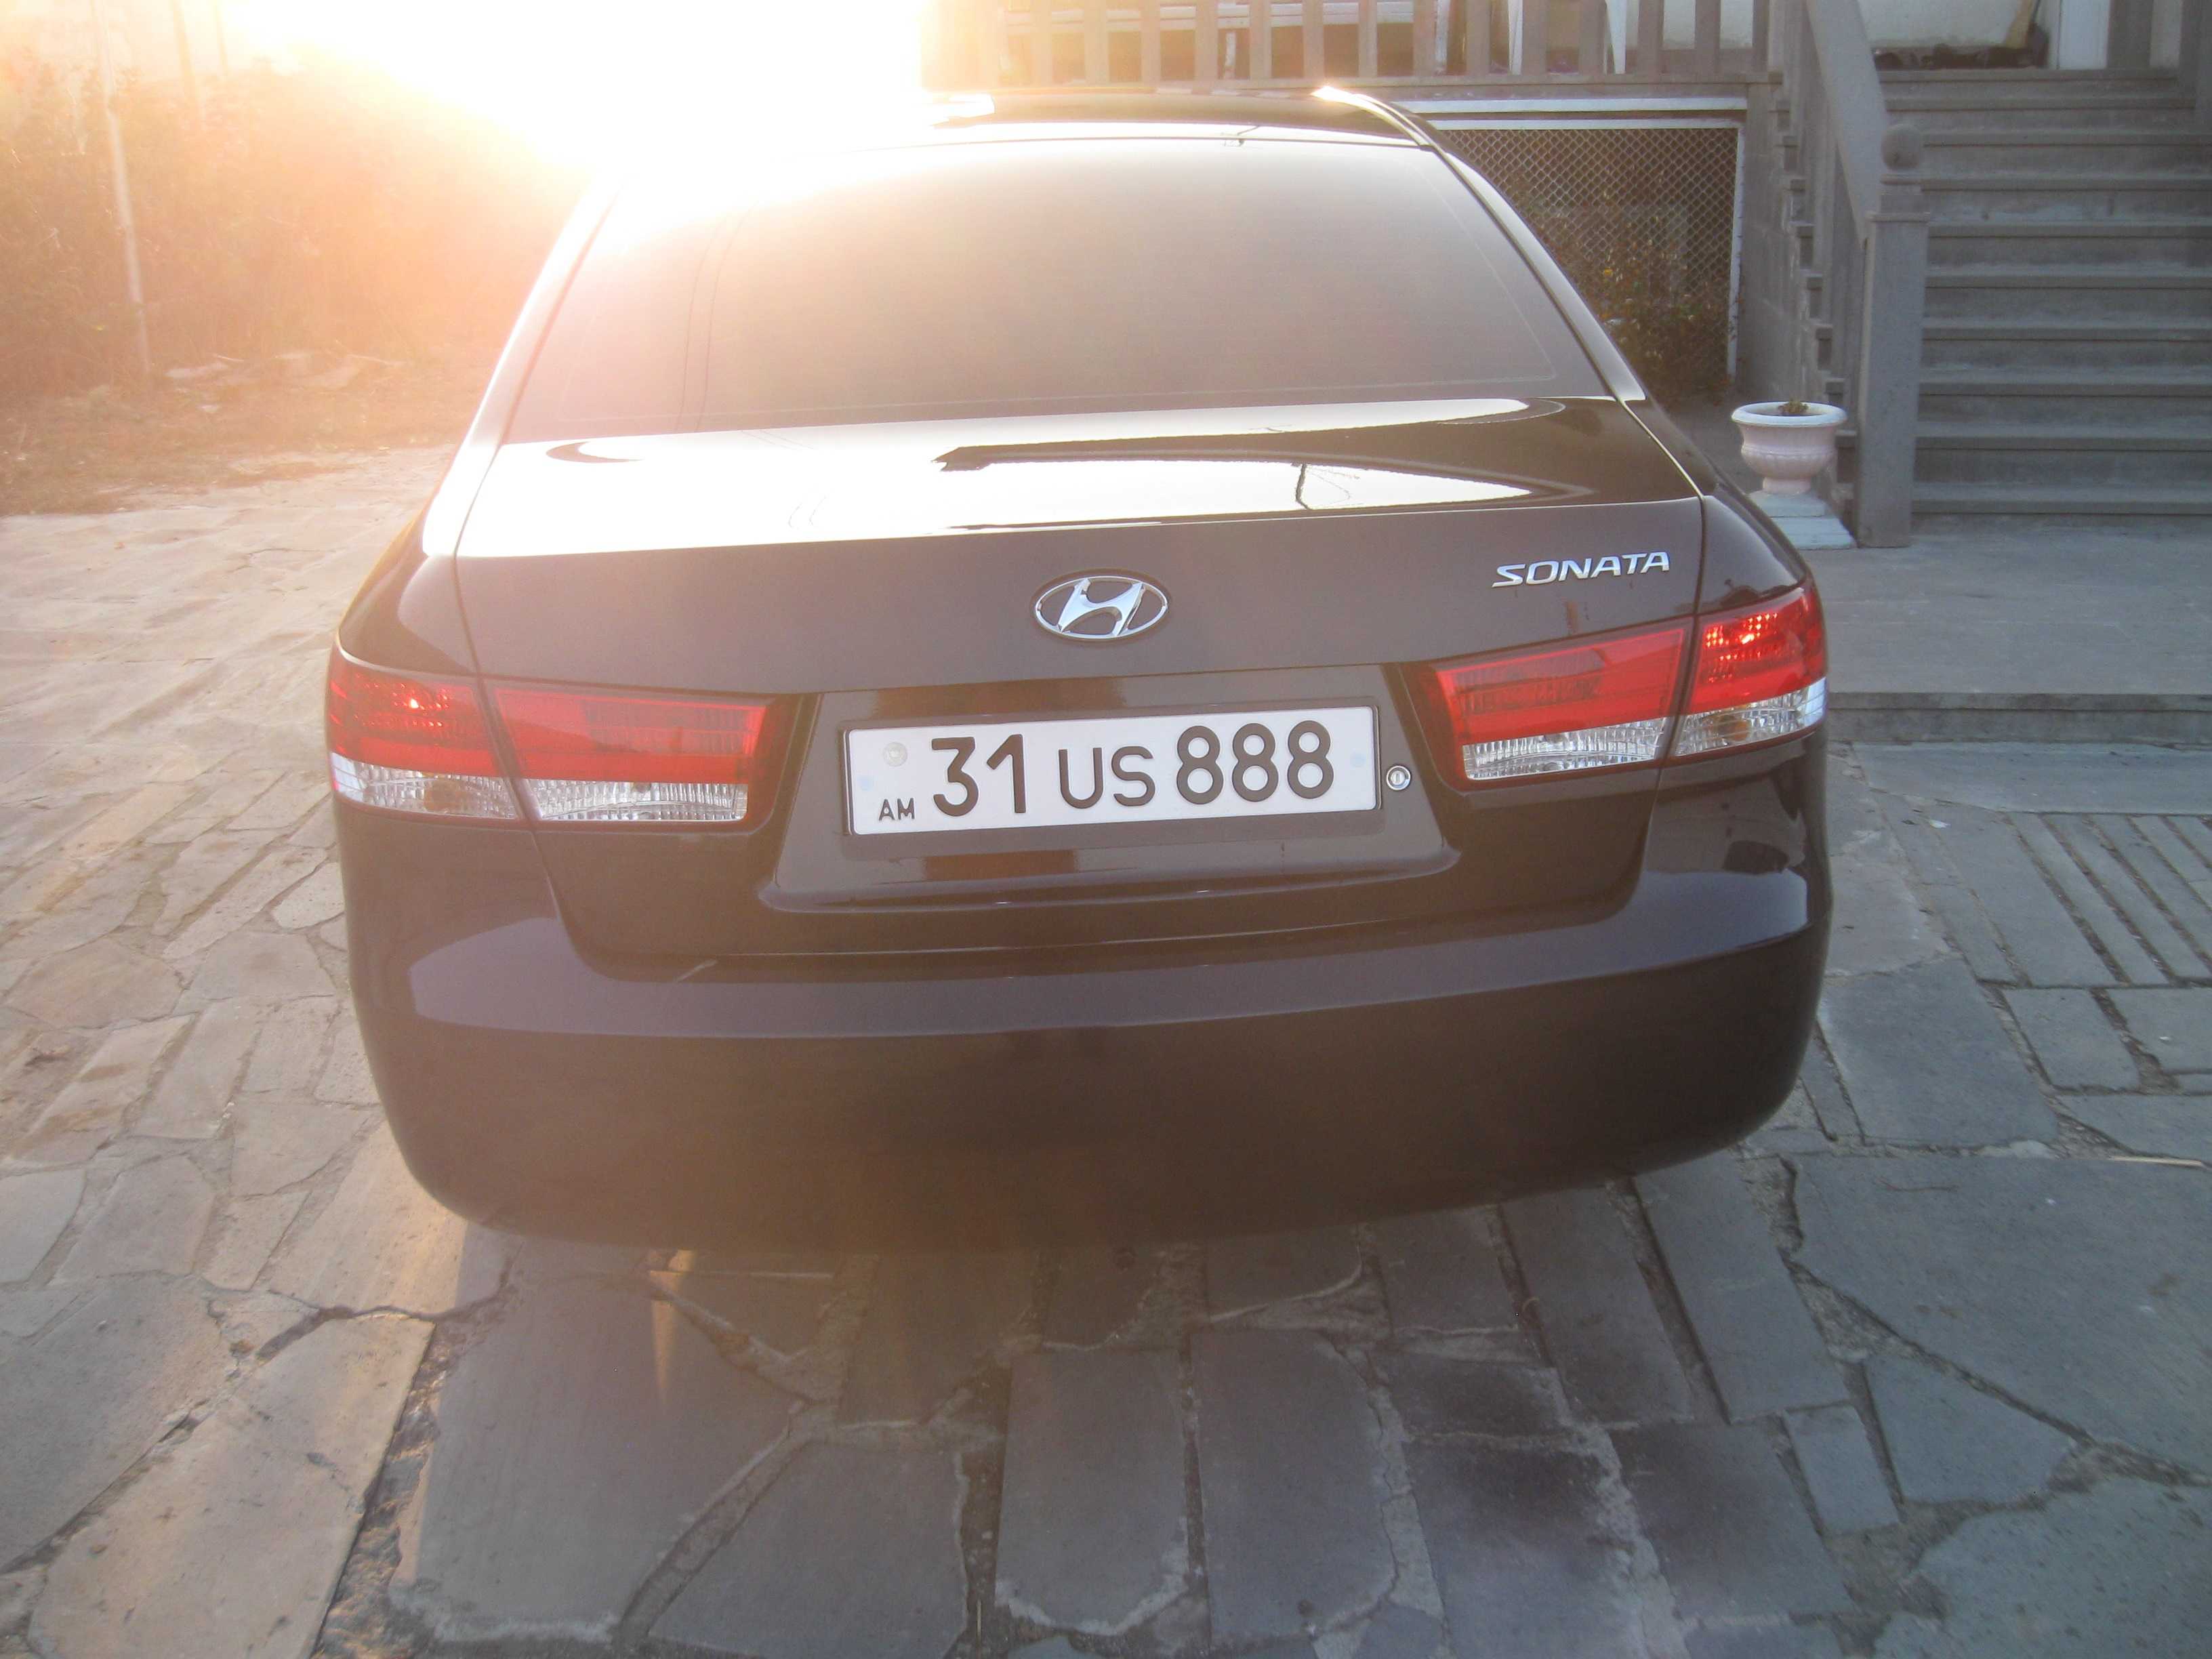 Hyundai sonata